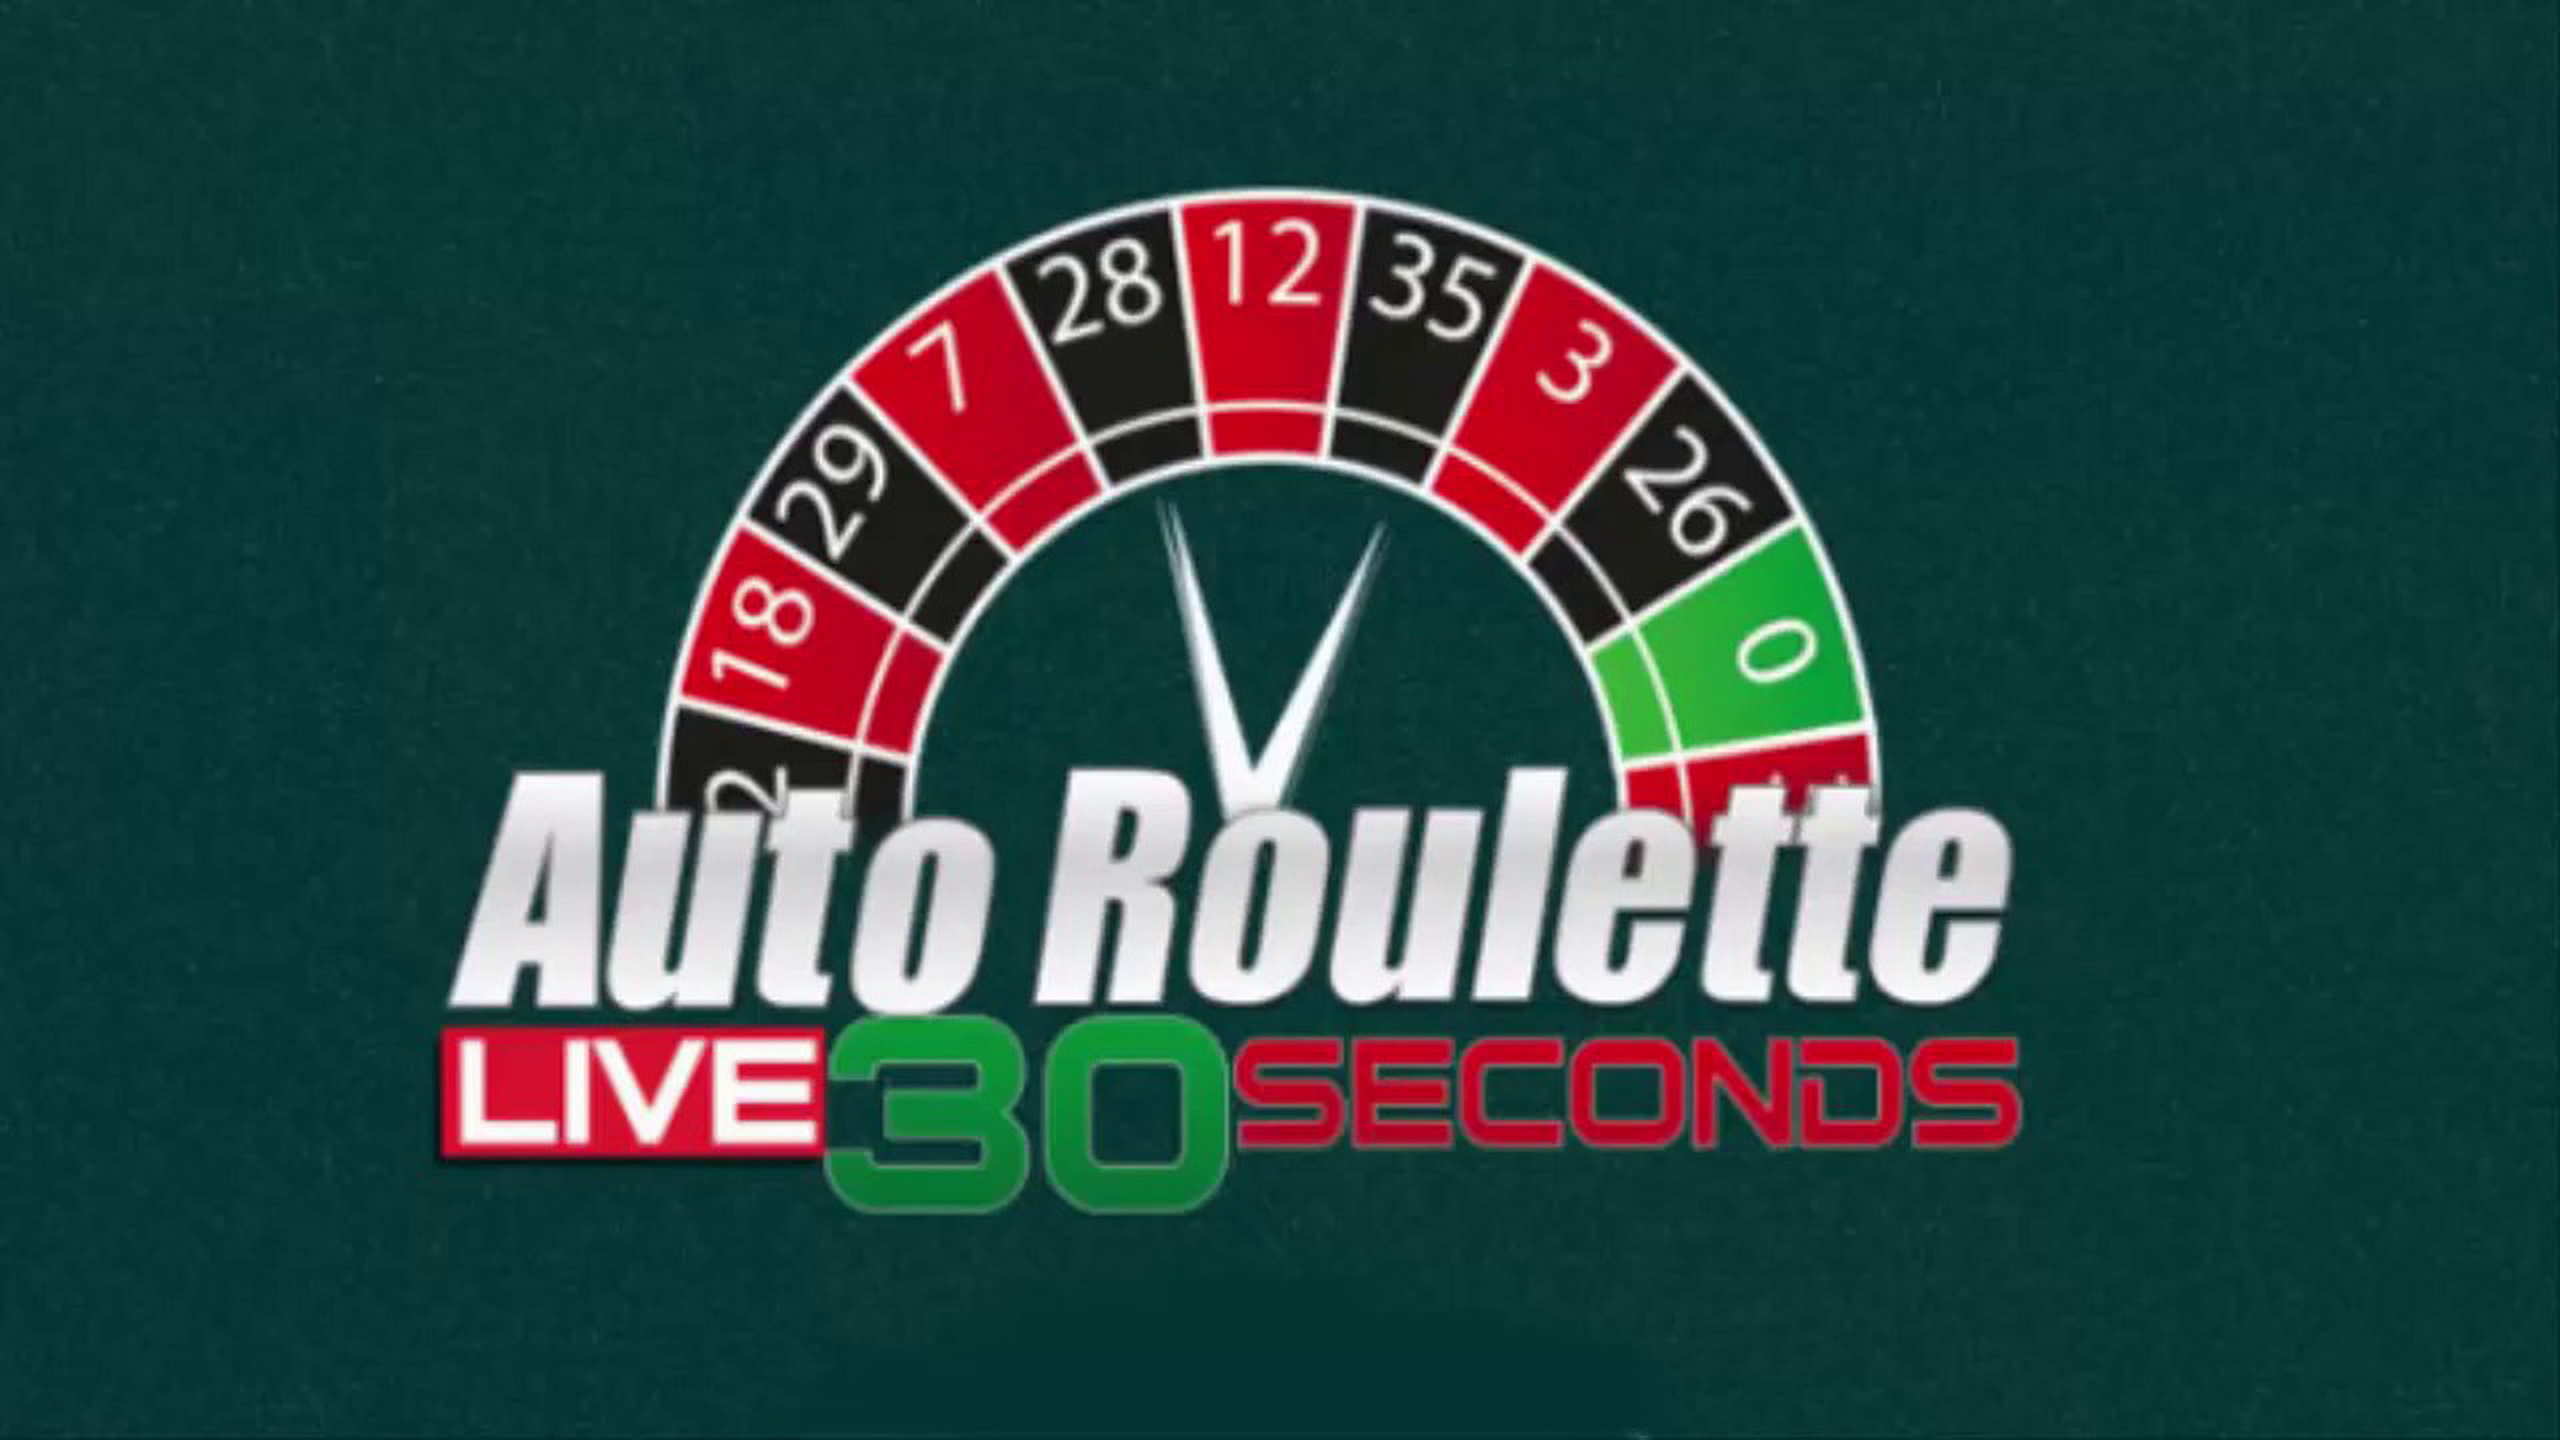 Auto Roulette Live 30 Seconds demo